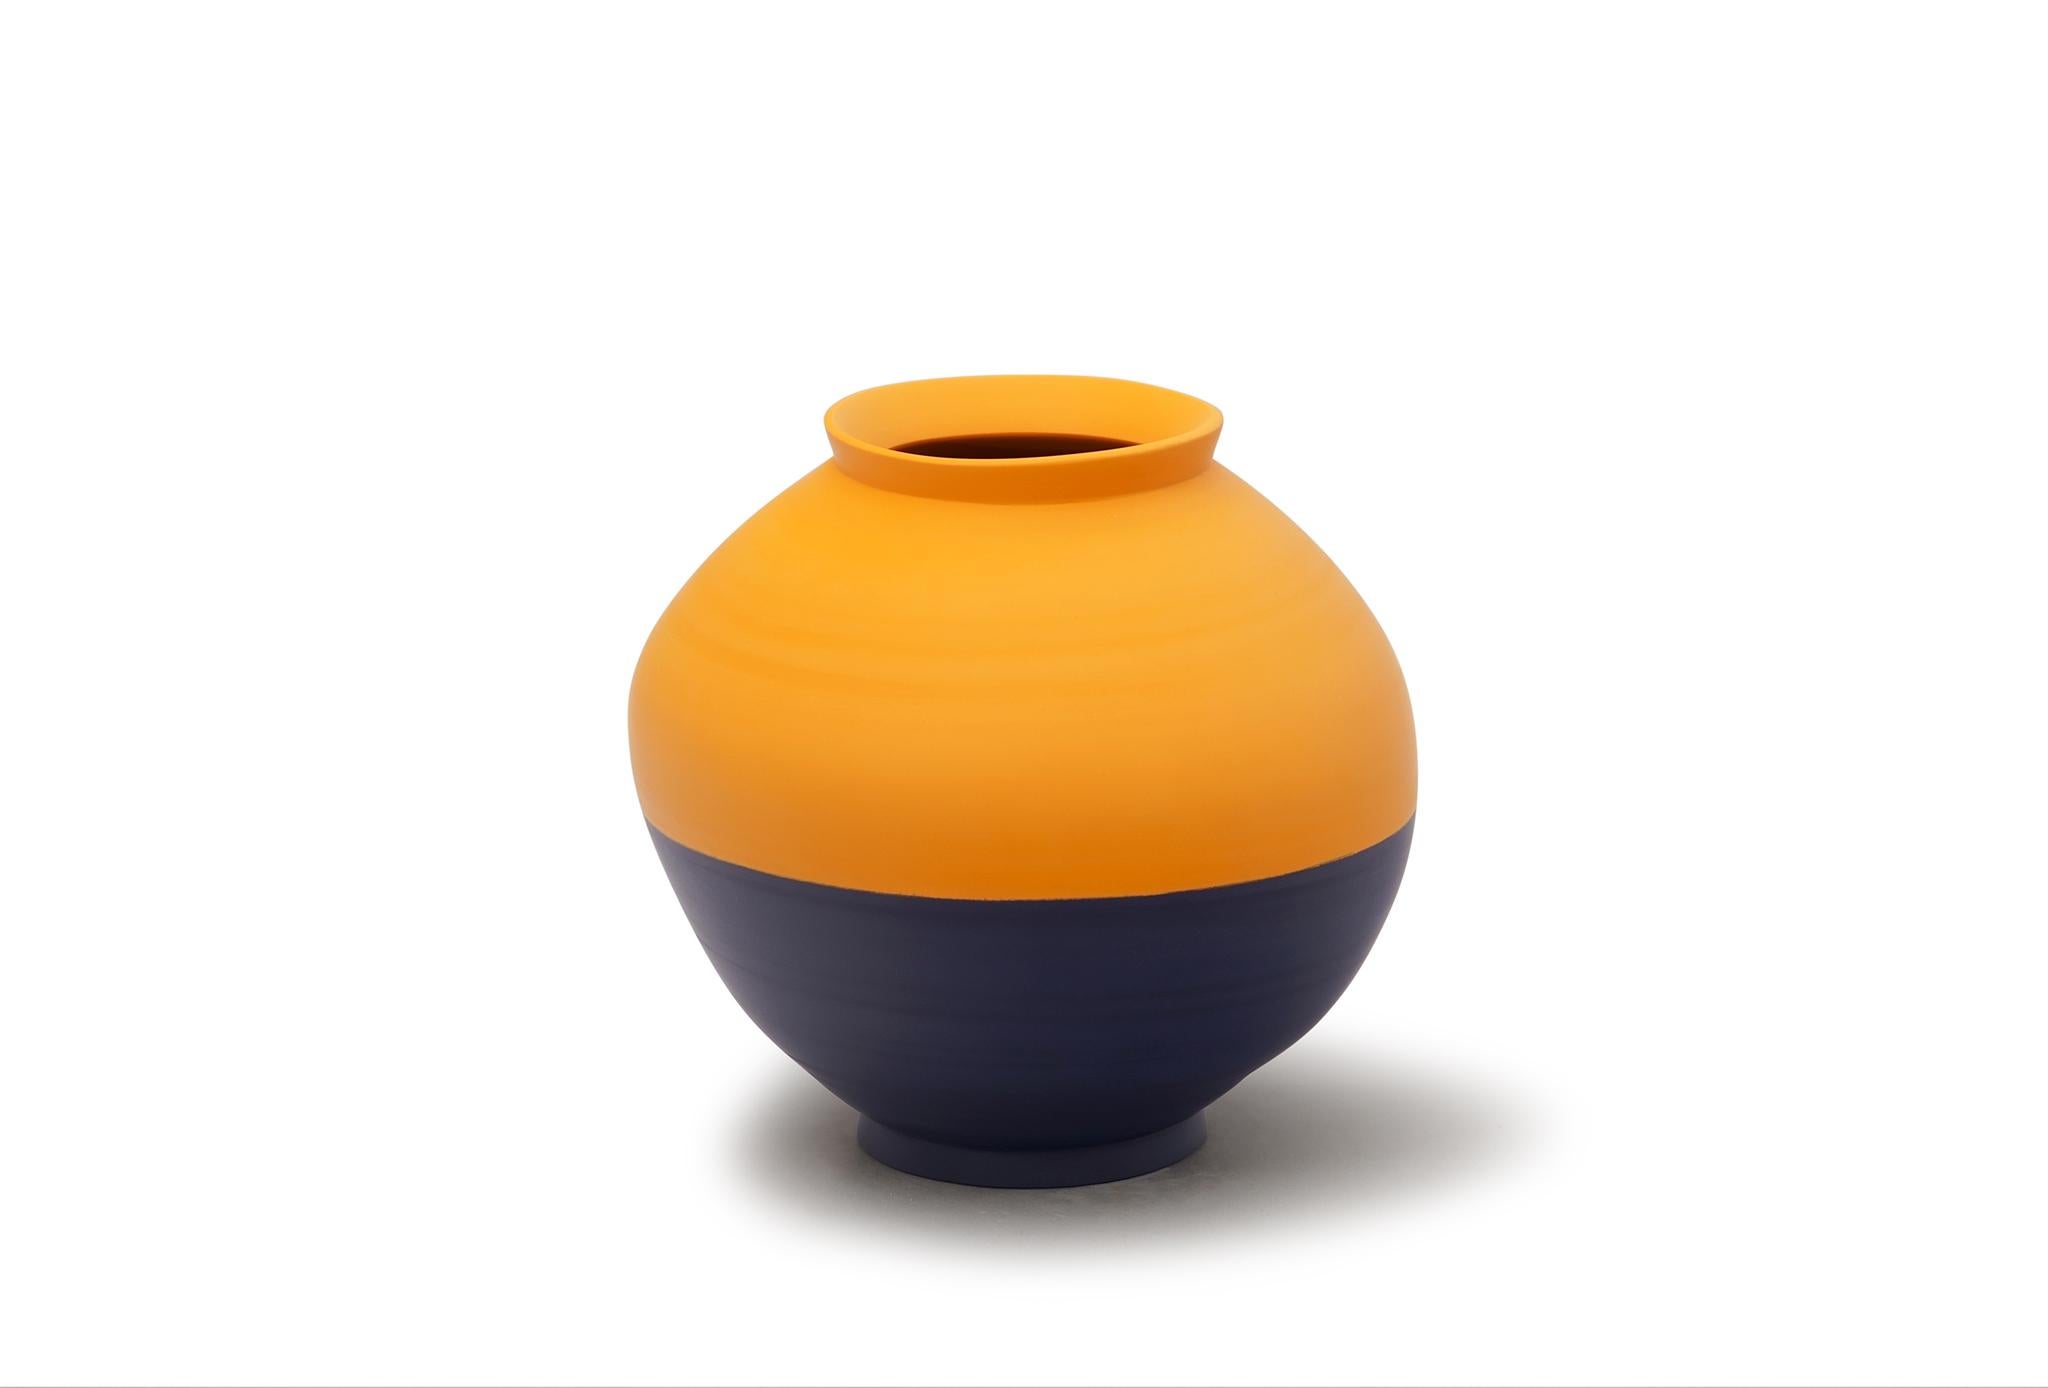 Halbe Vase von Jung Hong
Einzigartiges Stück
Abmessungen: B 22 x T 22 x H 23 cm
MATERIALIEN: Porzellan.

Ich verwende die Technik des 'sang-gam' (=Einlegearbeit) mit meinem speziellen Werkzeug, das ich selbst hergestellt habe, und kreiere zarte und